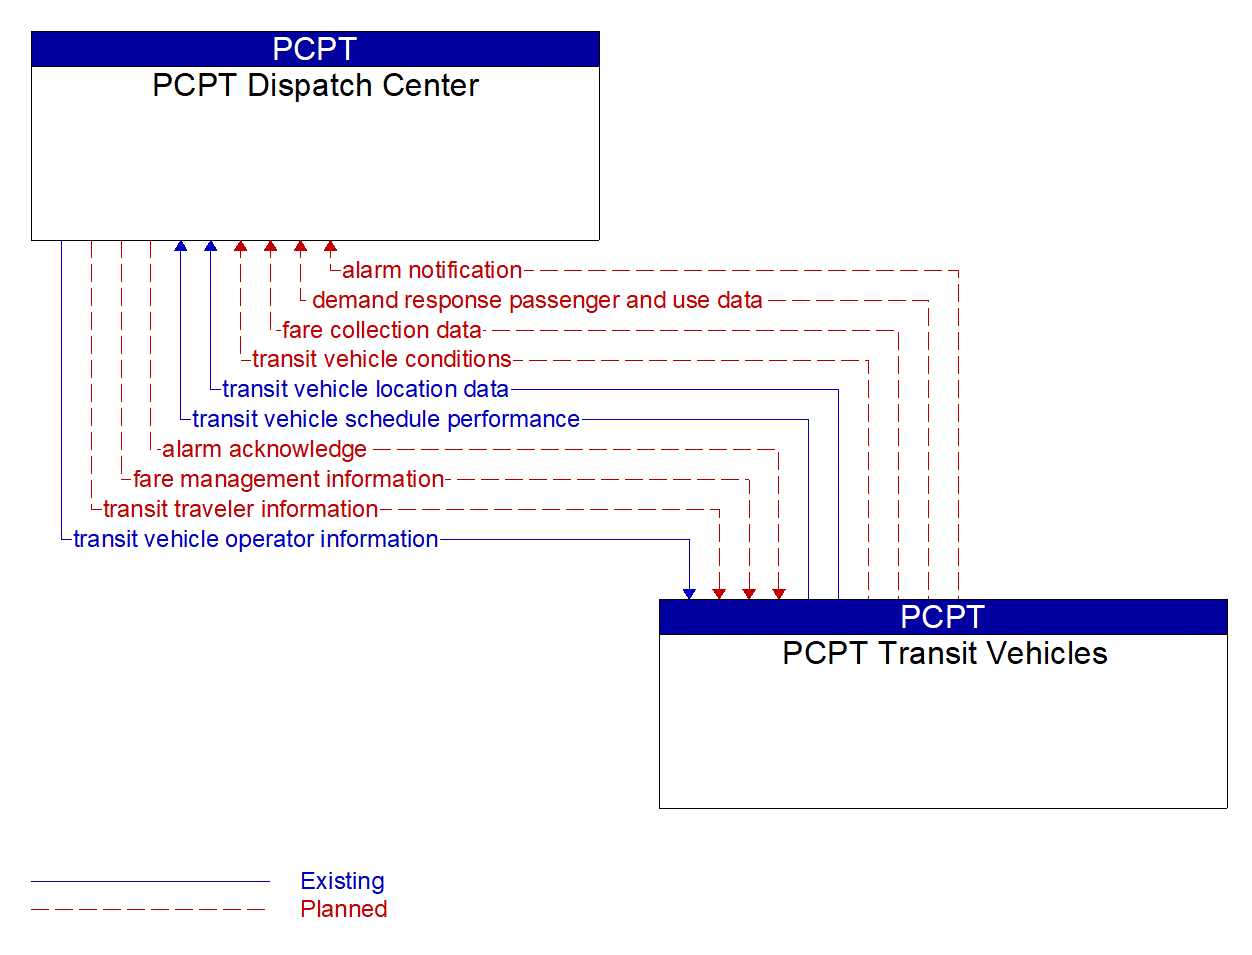 Architecture Flow Diagram: PCPT Transit Vehicles <--> PCPT Dispatch Center